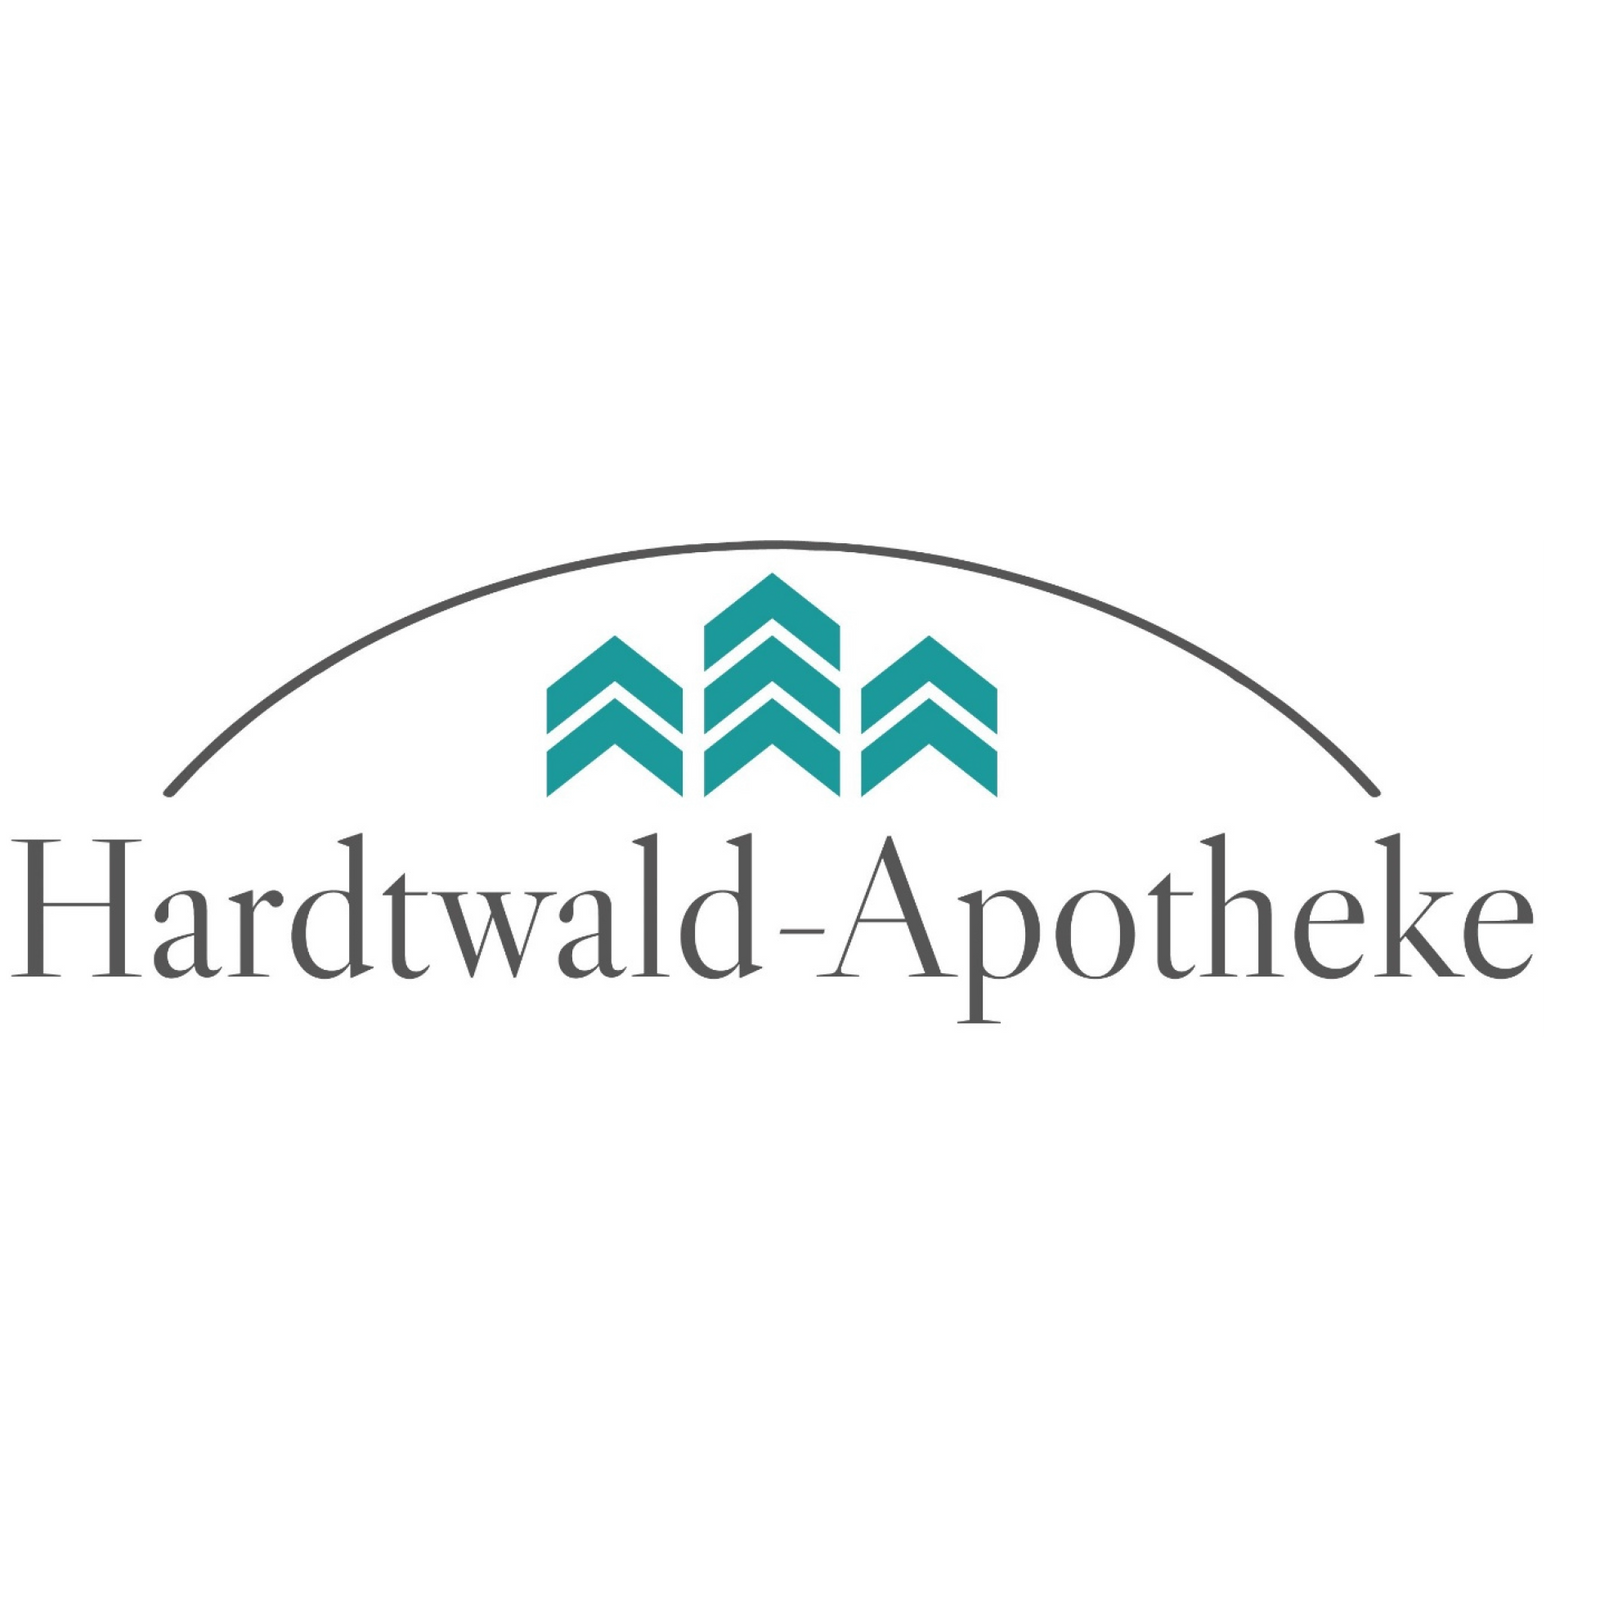 Hardtwald-Apotheke in Sandhausen in Baden - Logo